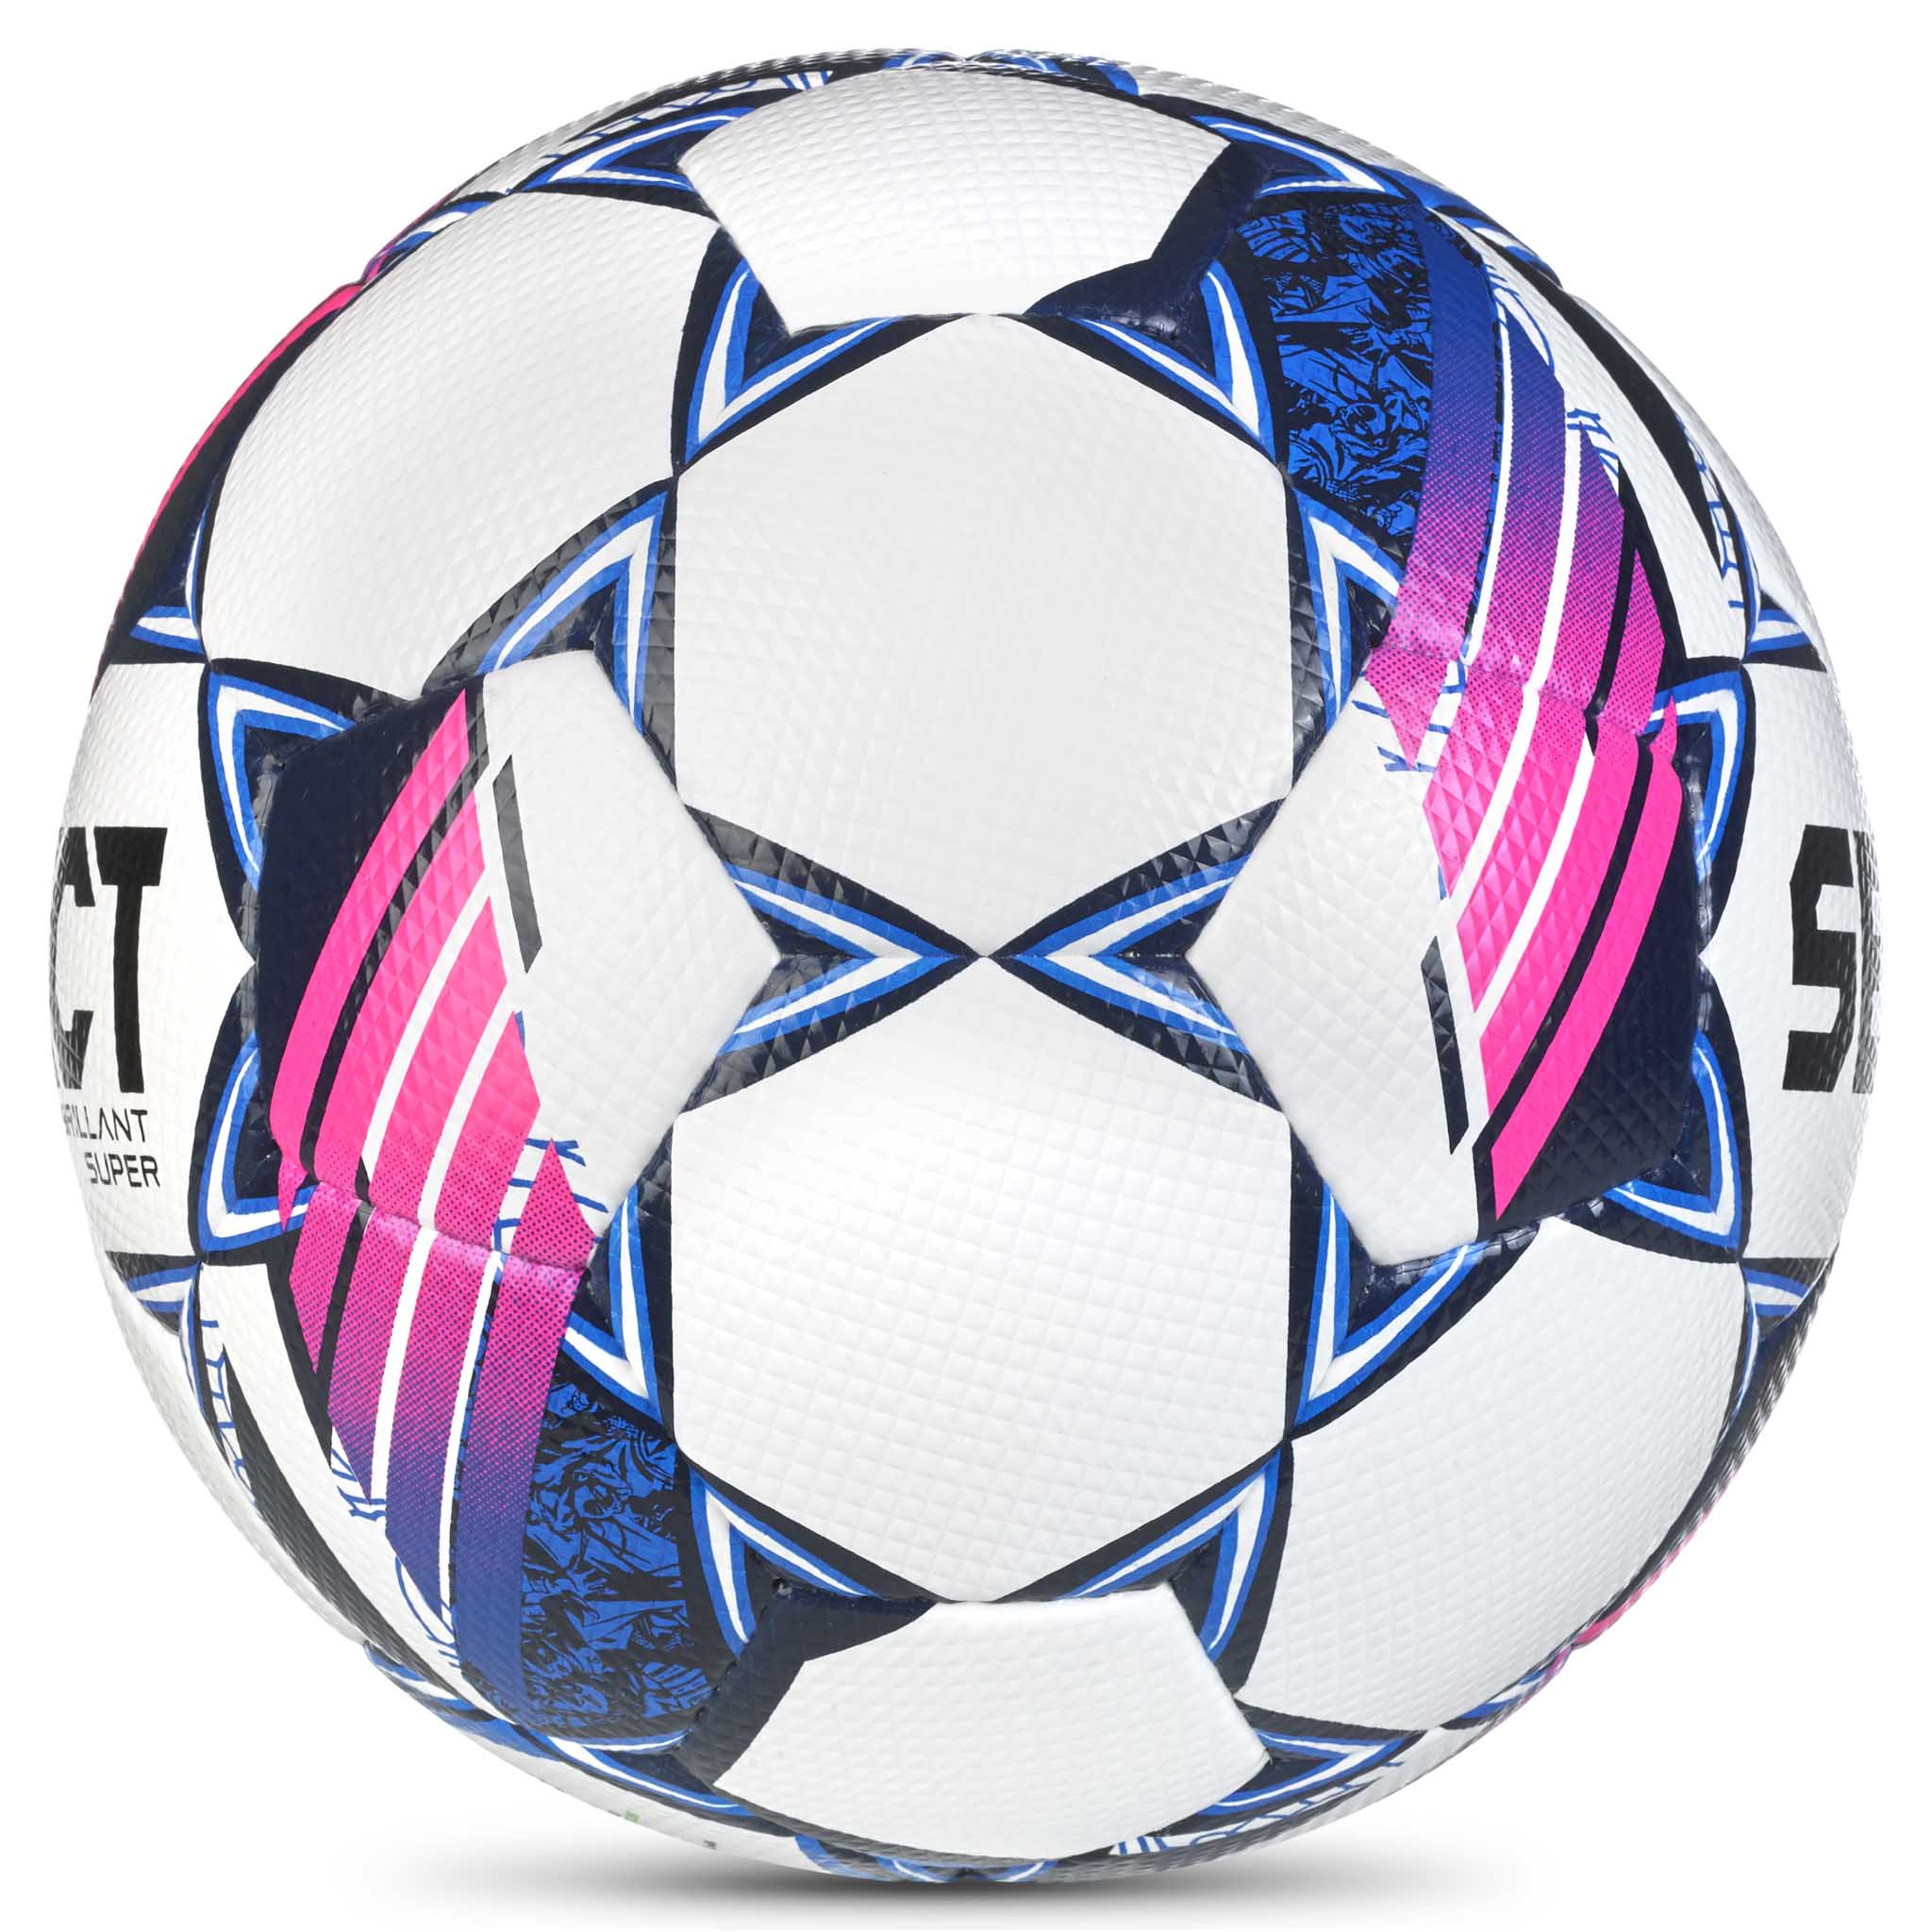 Fotball - Brillant Super #farge_hvit/blå